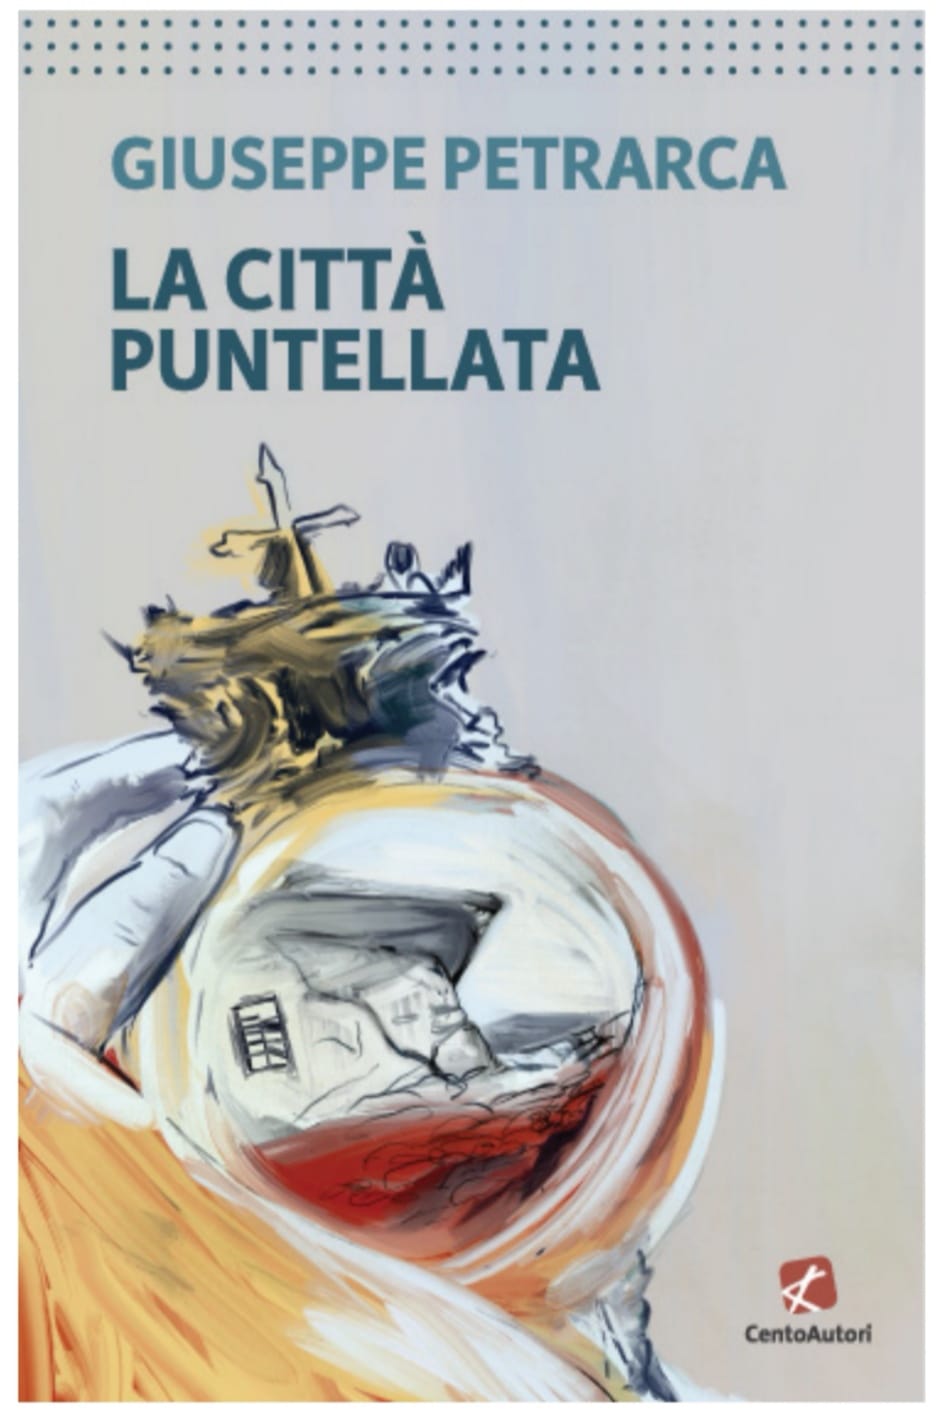 "La città puntellata", di Giuseppe Petrarca: 26 aprile presentazione in Feltrinelli